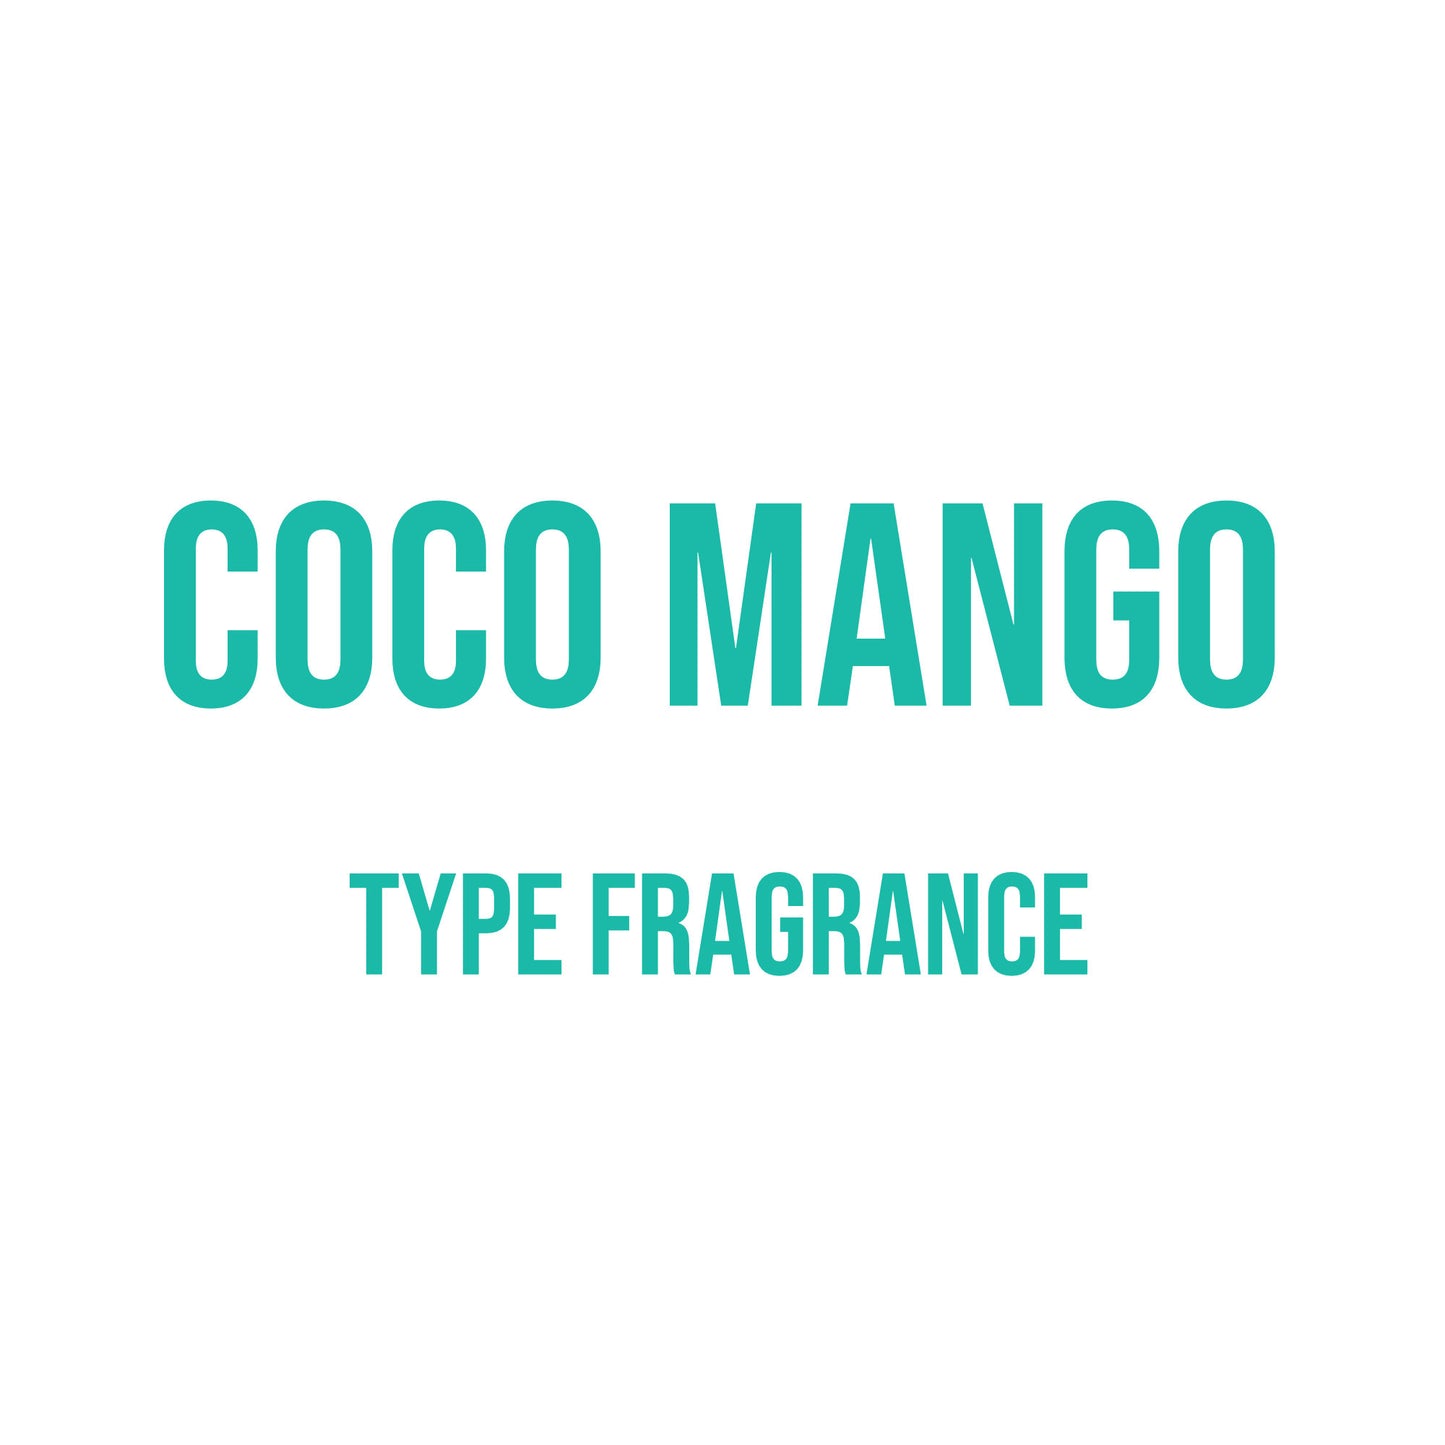 Coco Mango Type Fragrance